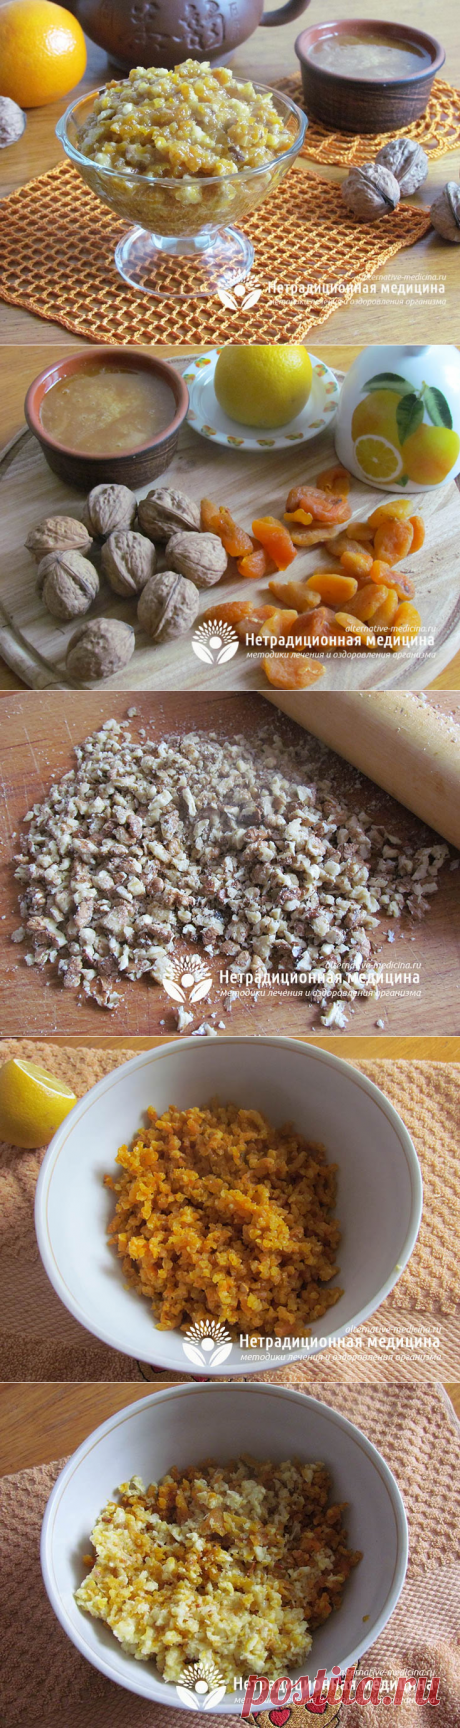 Смесь из орехов и сухофруктов с медом для иммунитета - пошаговый рецепт